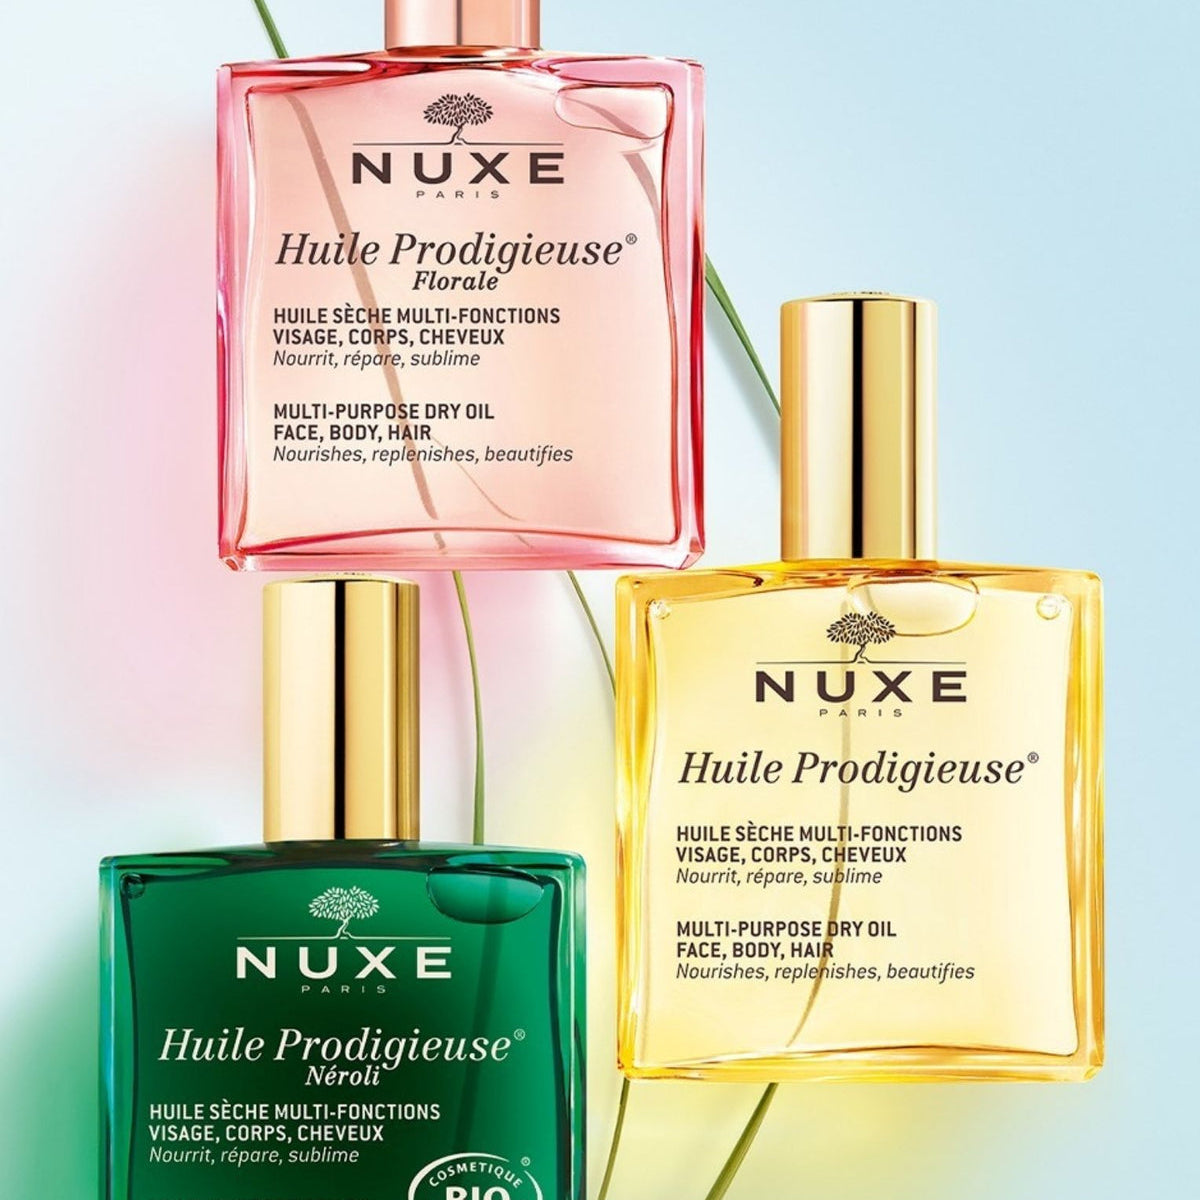 nuxe-huile-prodigieuse®-soins-de-peau-et-desprit-50ml